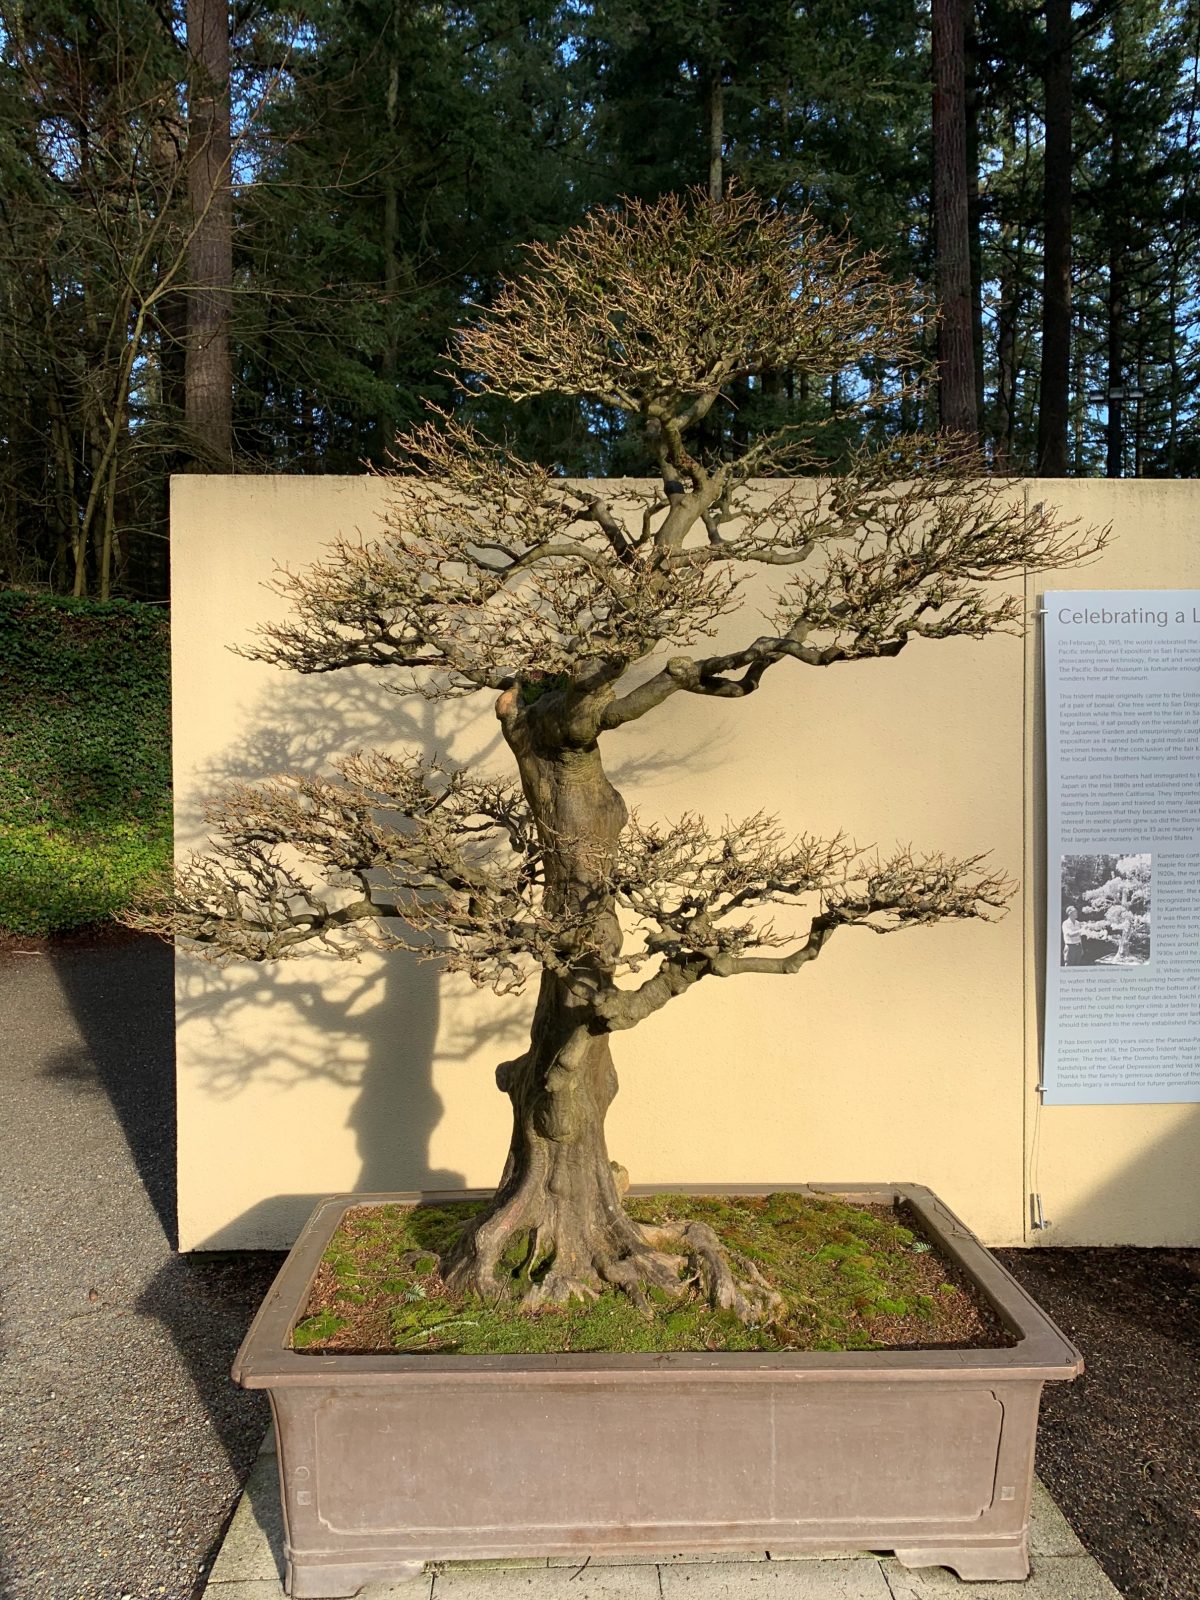 “Cây phong Domoto, Summer” (Trident Maple, Acer buergerianum), được trồng làm bonsai ít nhất là từ năm 1913. Nghệ nhân: ông Toichi Domoto. (Ảnh: Đăng dưới sự cho phép của Bảo tàng cây cảnh Bonsai Thái Bình Dương)